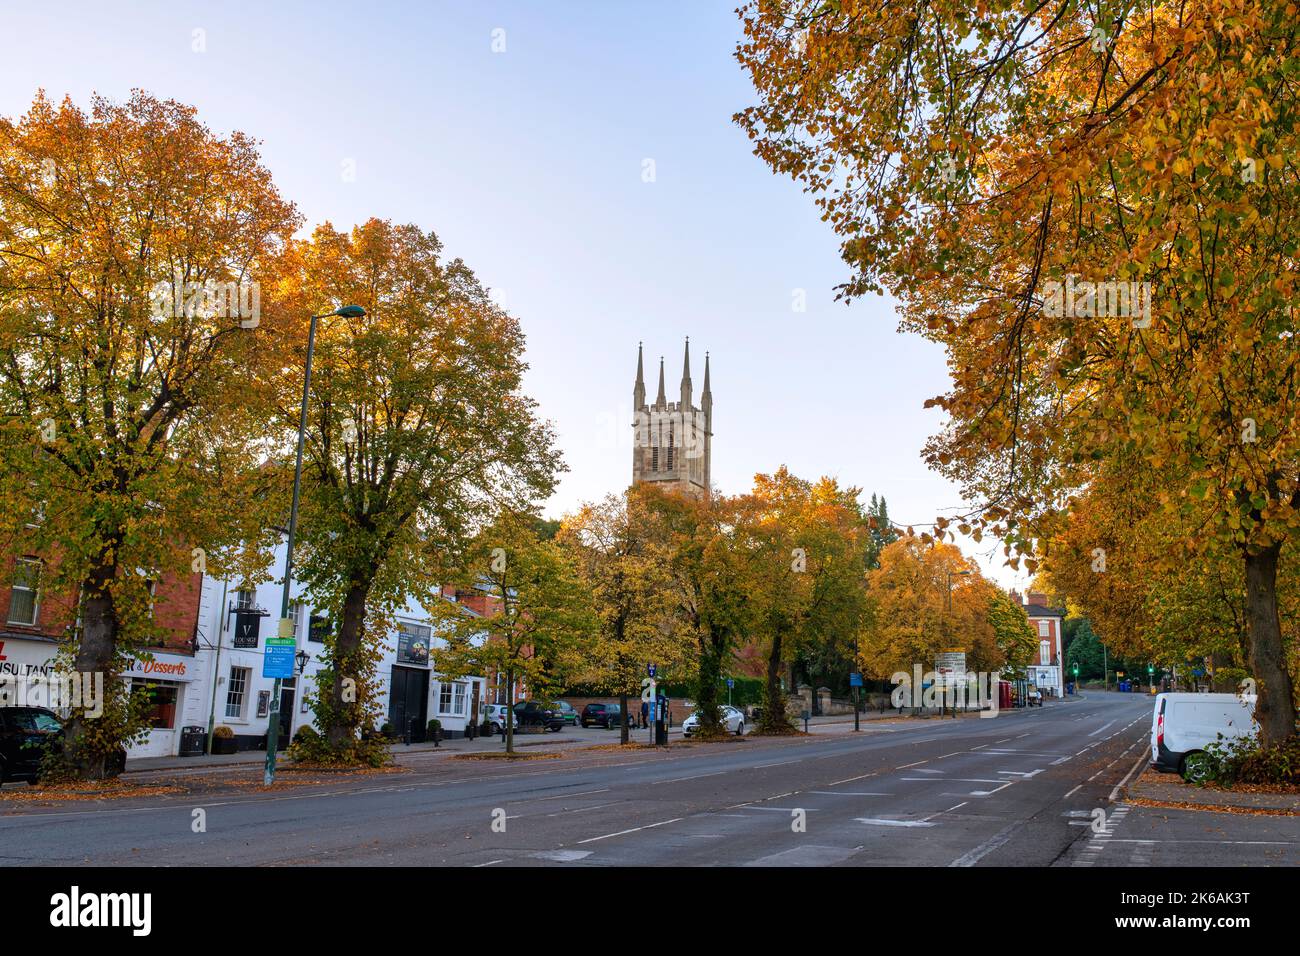 South Bar Street e la chiesa di St Johns in autunno. Banbury, Oxforshire, Inghilterra Foto Stock